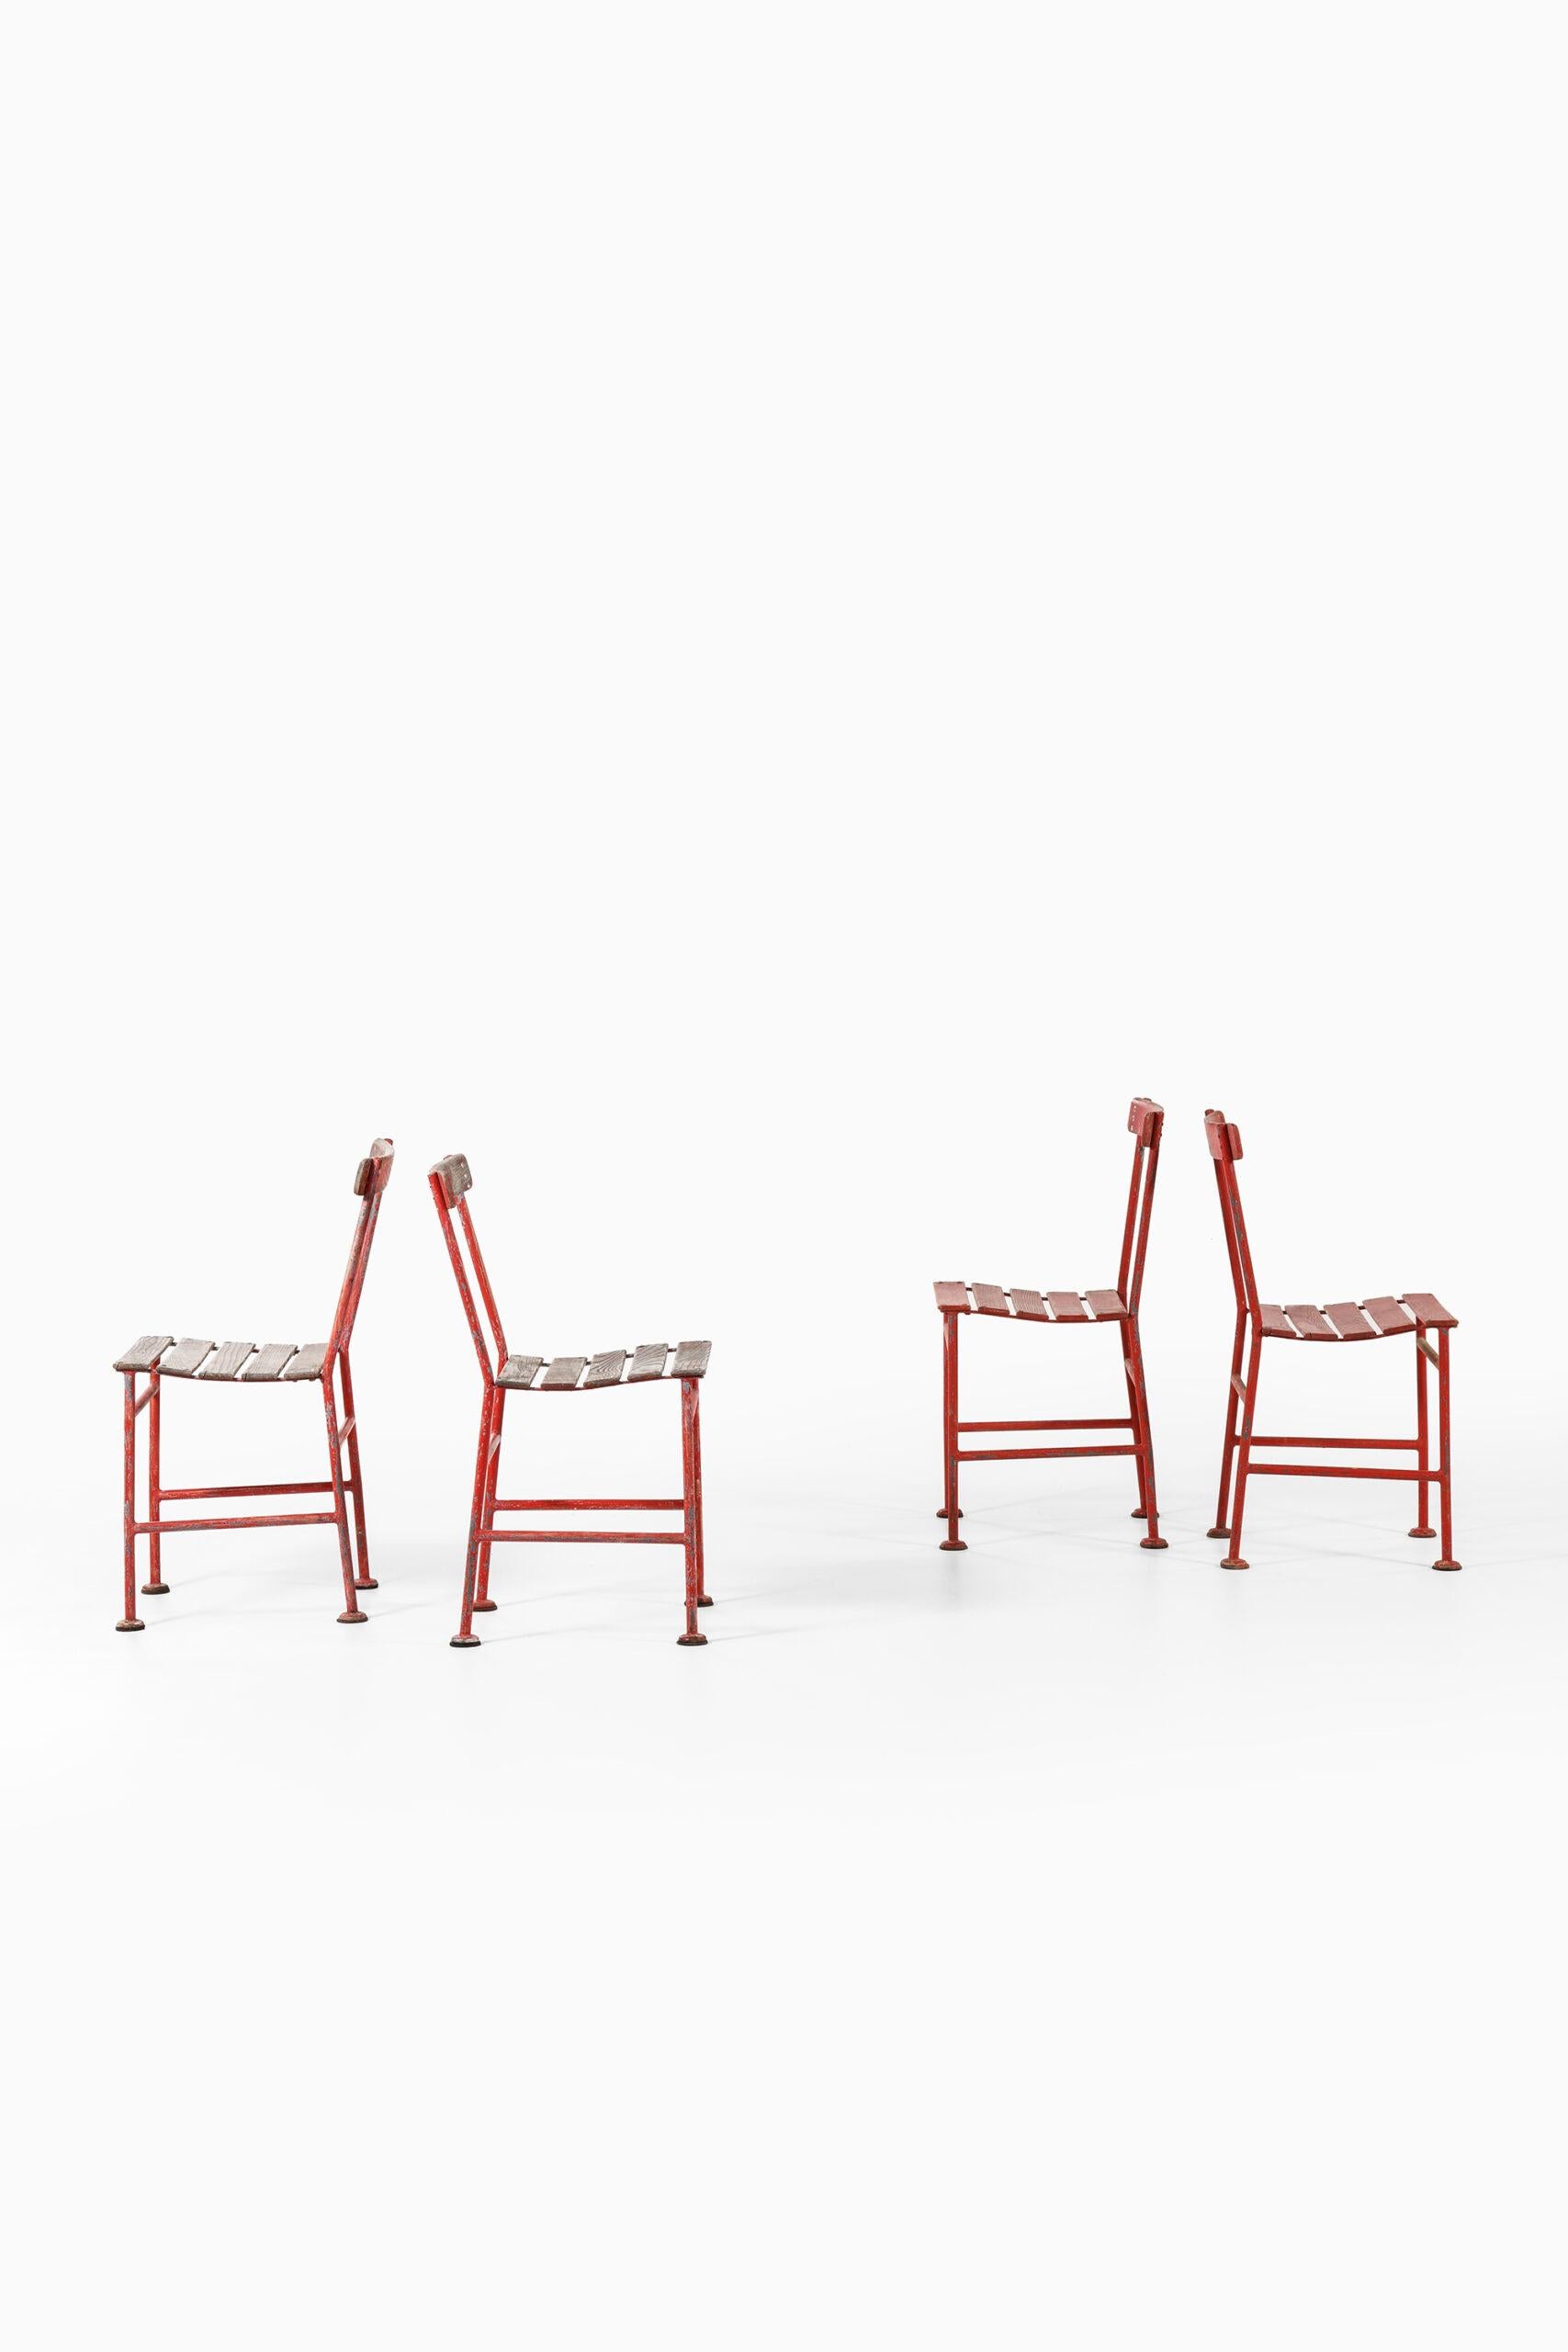 Rare ensemble de 4 chaises conçues par Gunnar Asplund. Produit par Iwan B. Giertz à Flen, Suède.